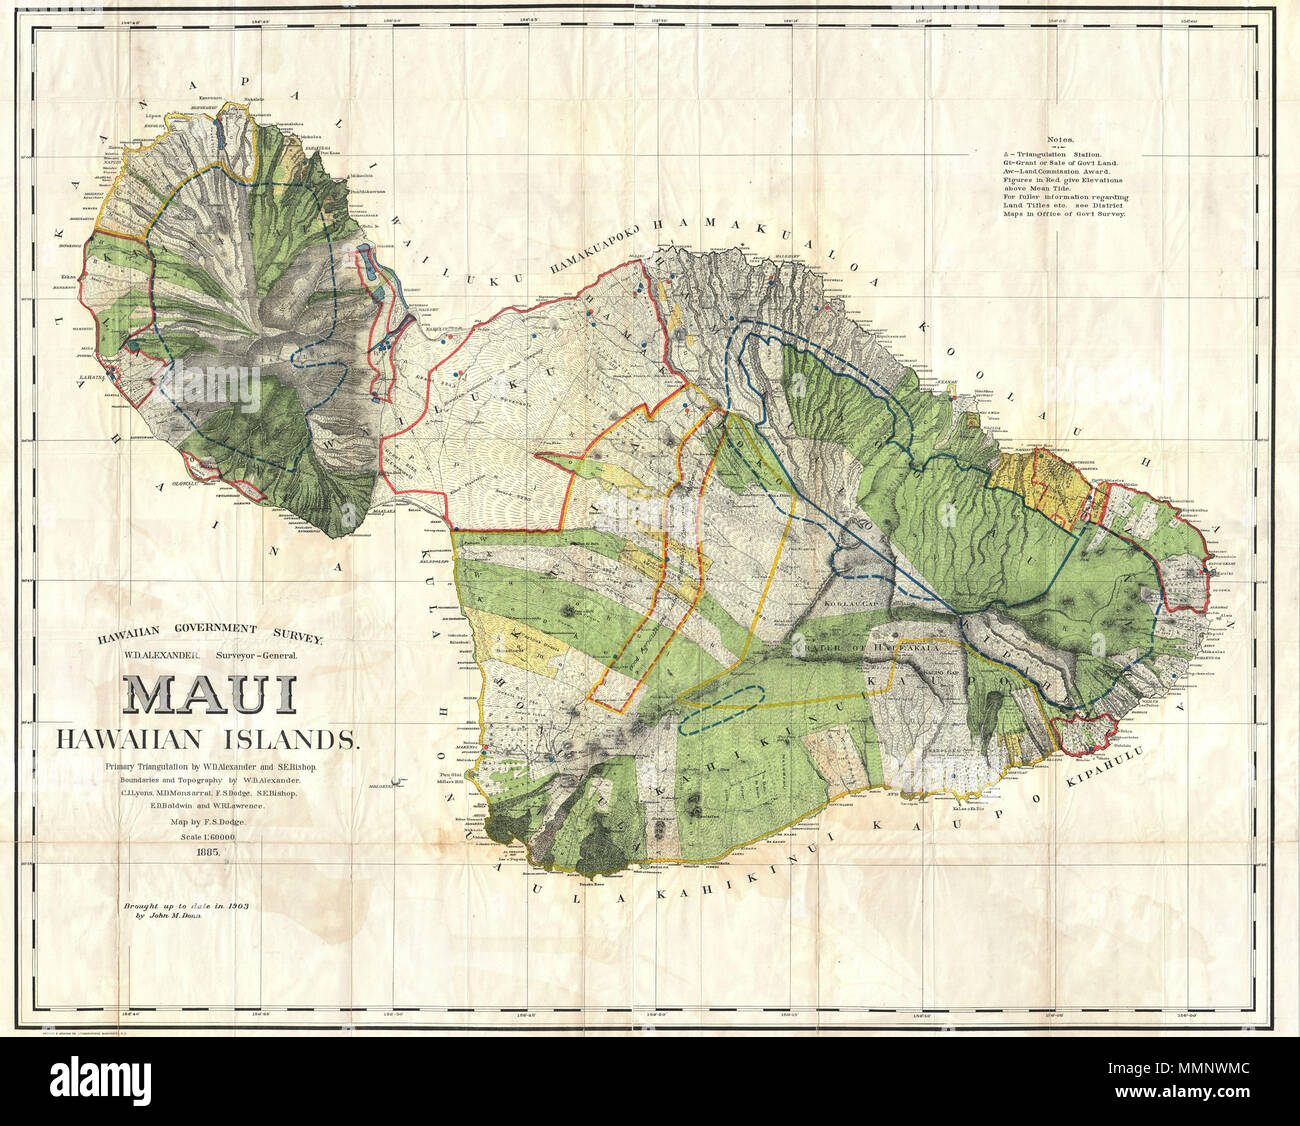 . Englisch: Diese sehr große, seltene und außergewöhnliche Karte 1885 von der Insel Maui, Hawaii, für das Jahr 1906 Bericht des Gouverneurs des Gebietes von Hawaii zu den Staatssekretär des Innern vorbereitet wurde. Deckt die gesamte Insel in wunderbare Details. Obwohl die kartographische Arbeiten, dass diese Karte hergestellt wurde 1885 begonnen, während der hawaiischen Monarchie, die Karte selbst, und der Bericht, den es enthielt, wurde erteilt, der Annexion der US-Regierung 1898 der hawaiischen Republik. Der Bericht war ein Versuch zu bewerten und die neu geschaffenen Möglichkeiten der hawaiischen Gebiet für die ordnungsgemäße admi prüfen Stockfoto